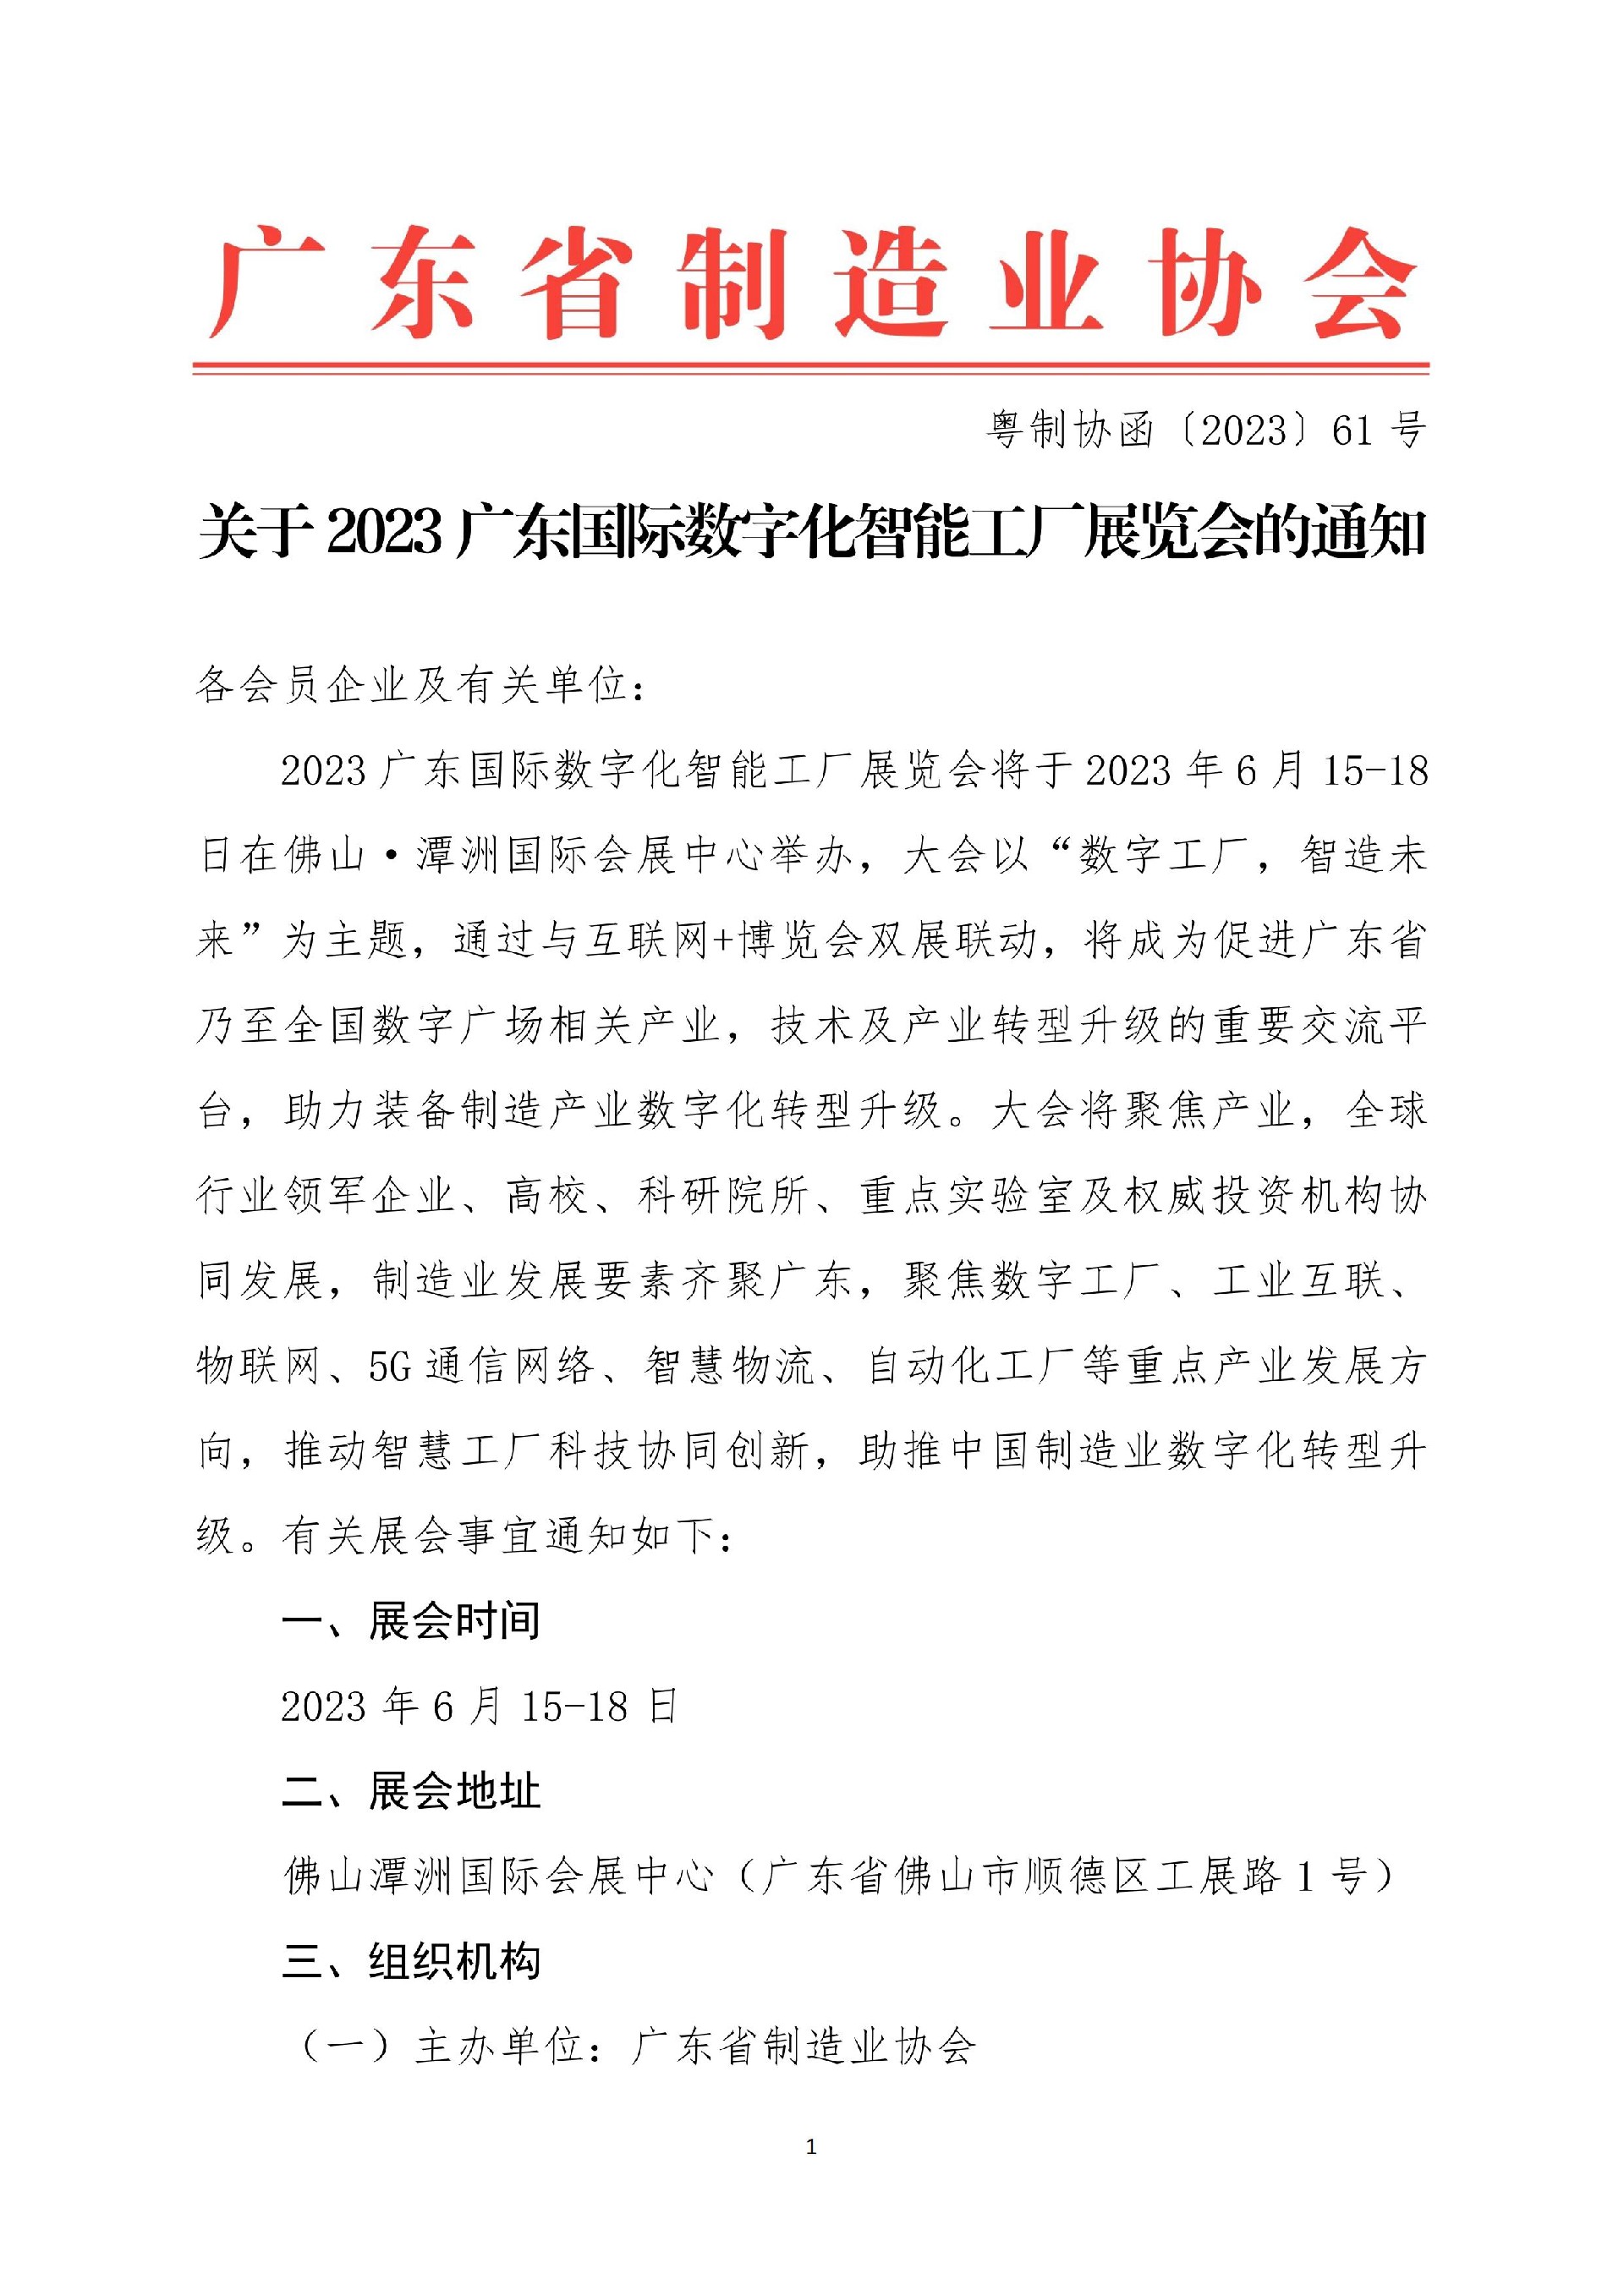 61号函-关于2023广东国际数字化智能工厂展览会的通知